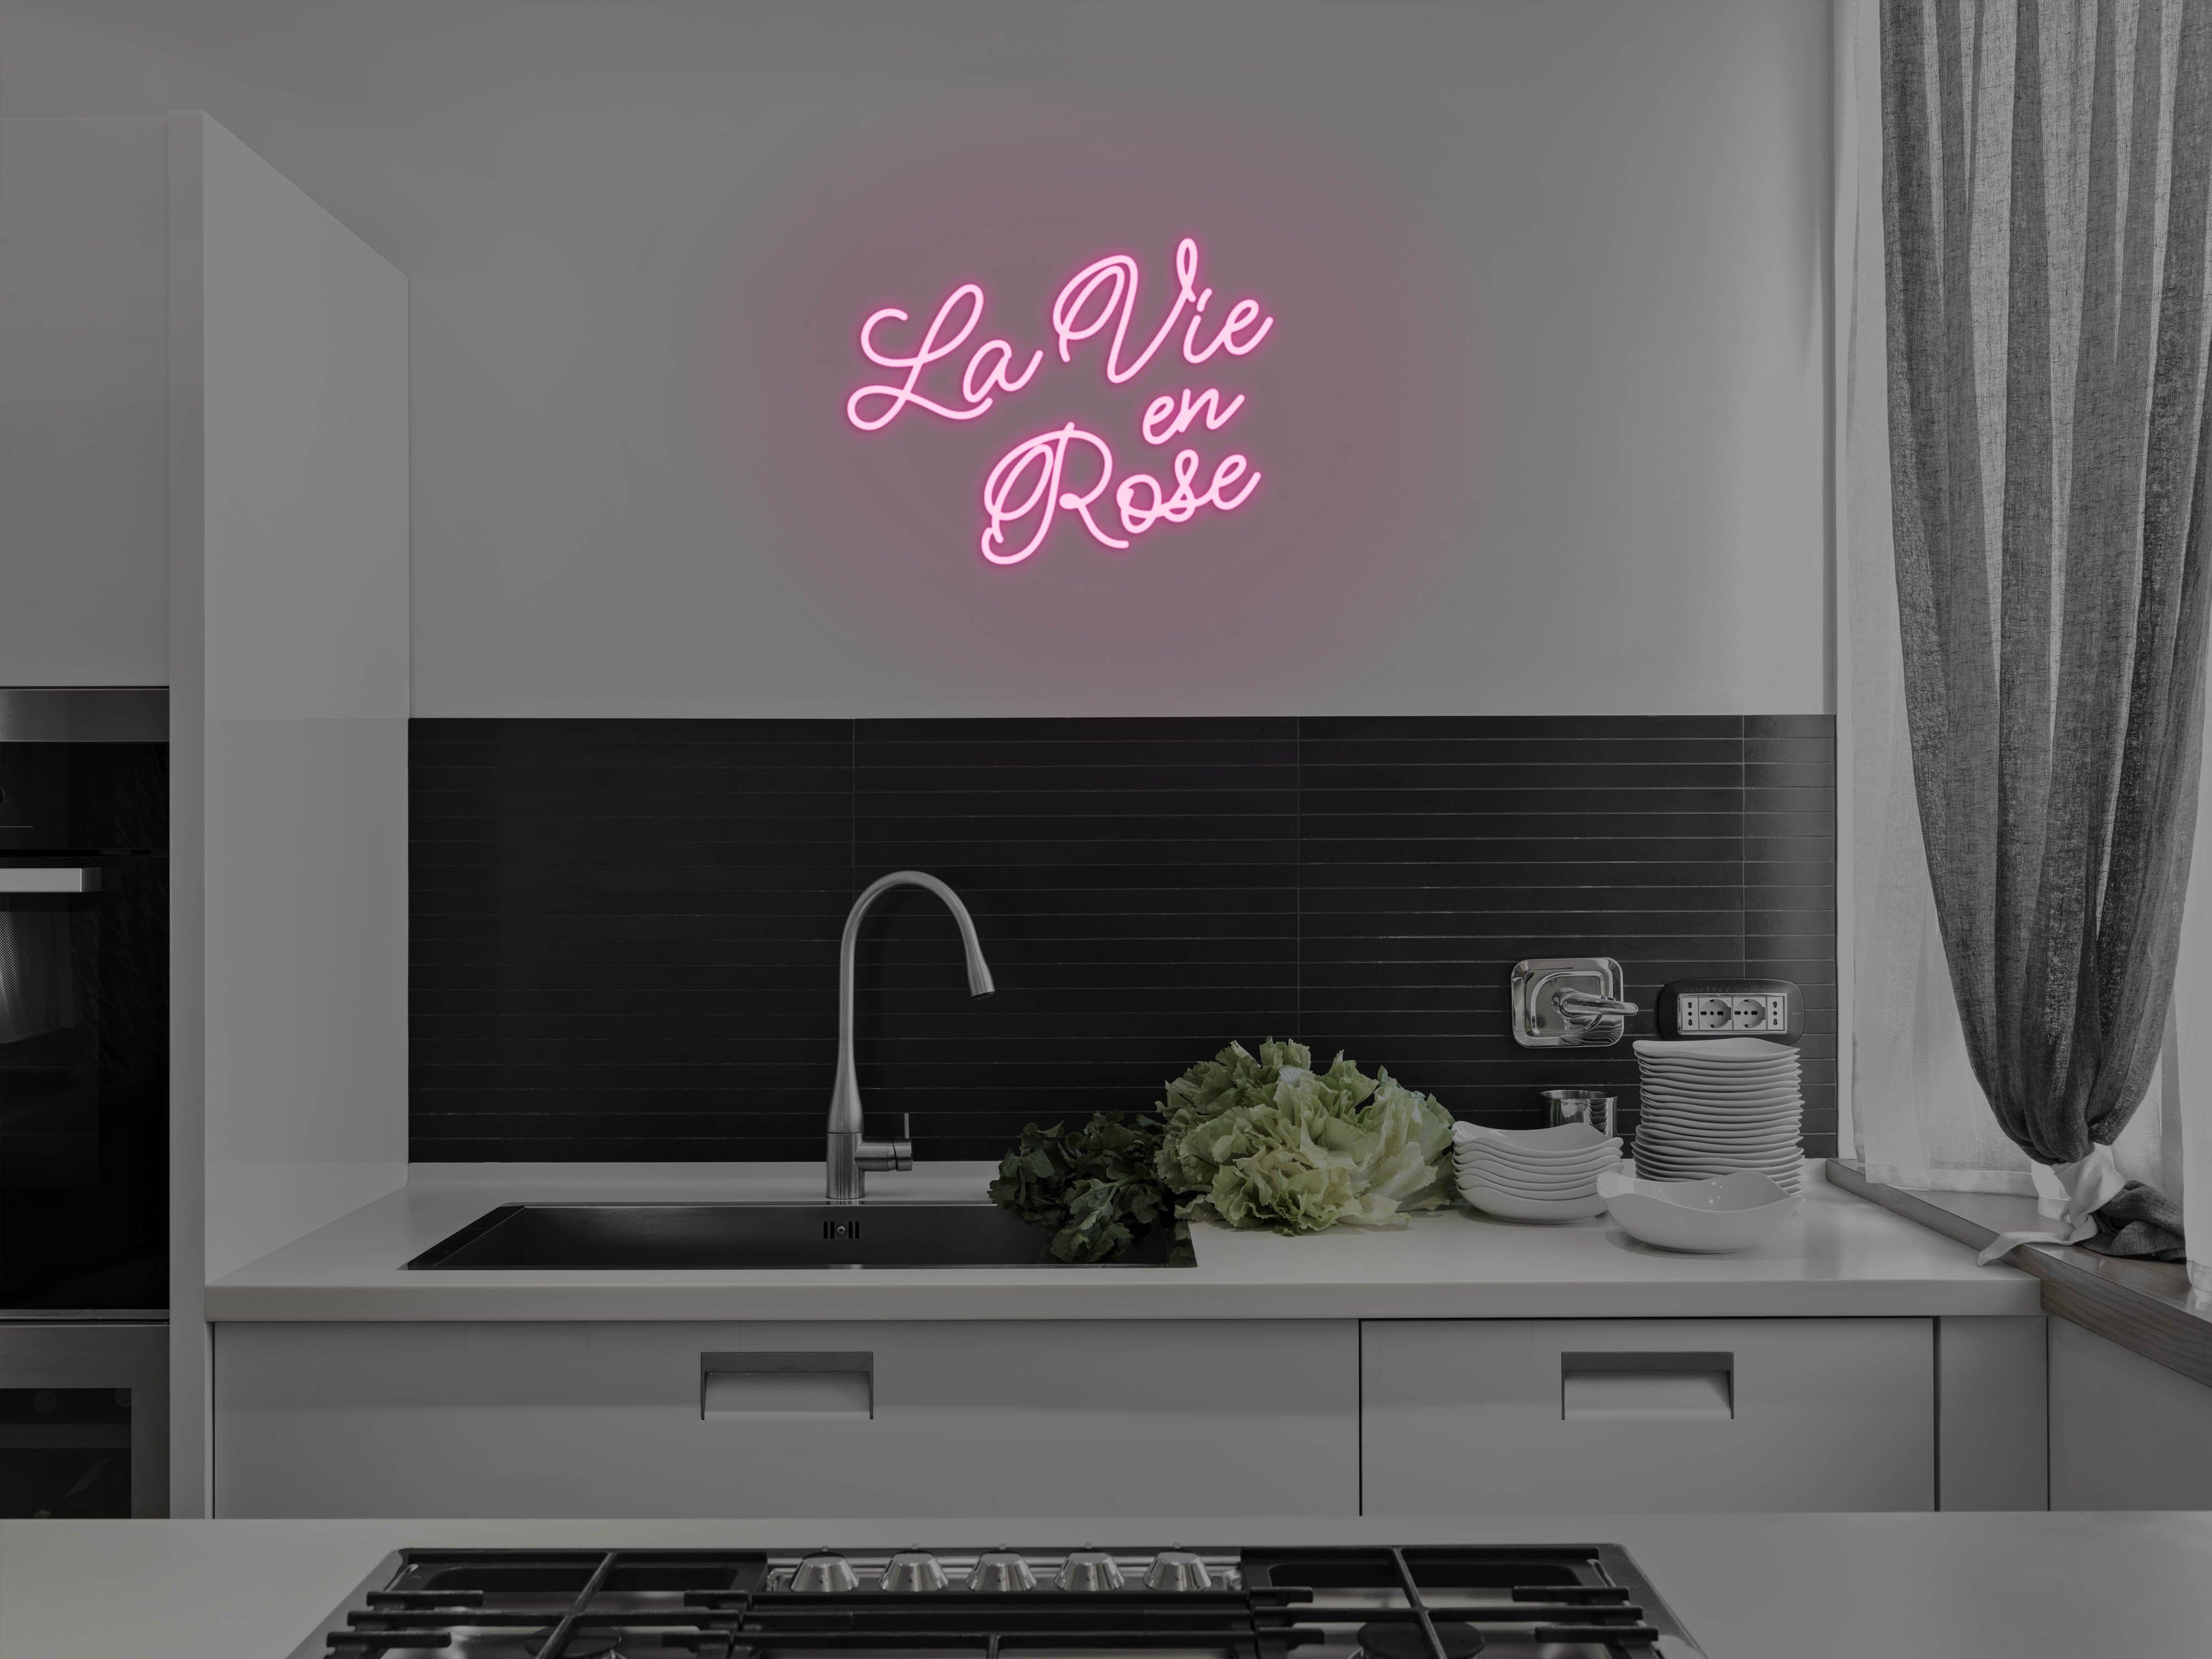 La vie en rose - LED neon sign